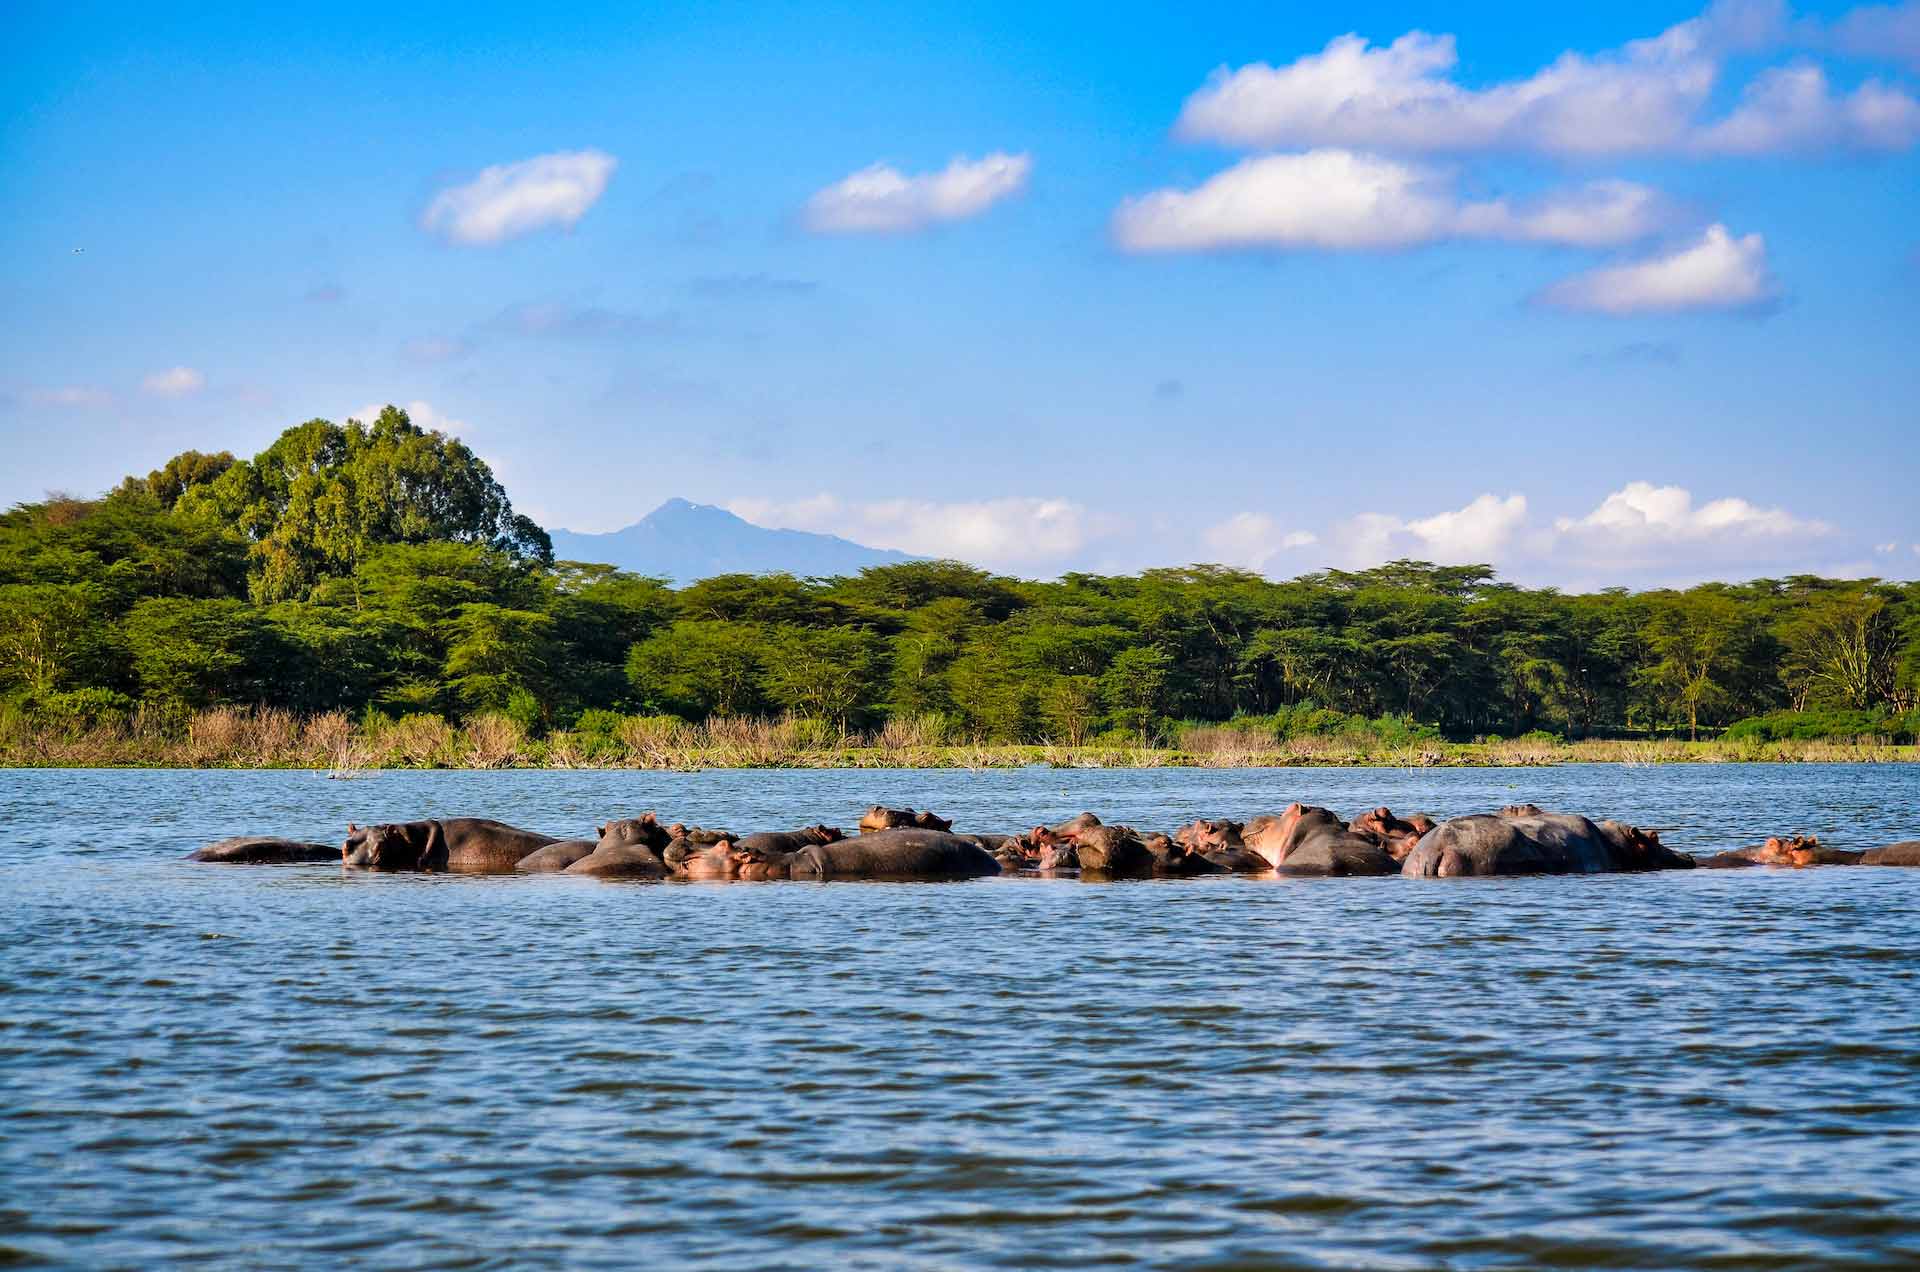 Beautiful scenes from a safari in the natural reserves. Lake Nakuru in Kenya